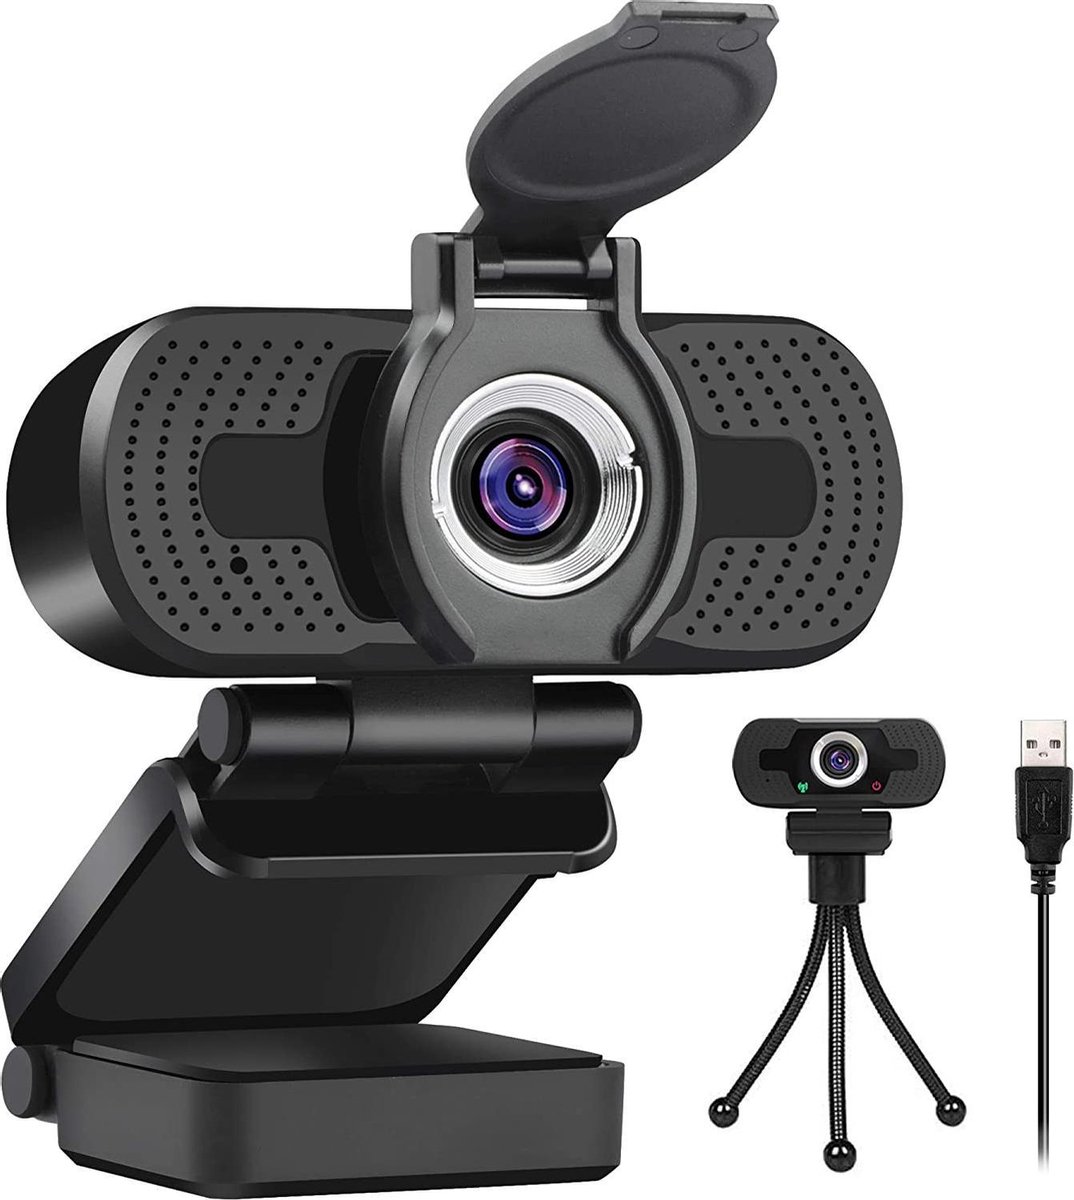 Professionele Webcam Full HD 1080P voor PC met Ingebouwde Microfoon & Inclusief Gratis Webcam Cover + Statief